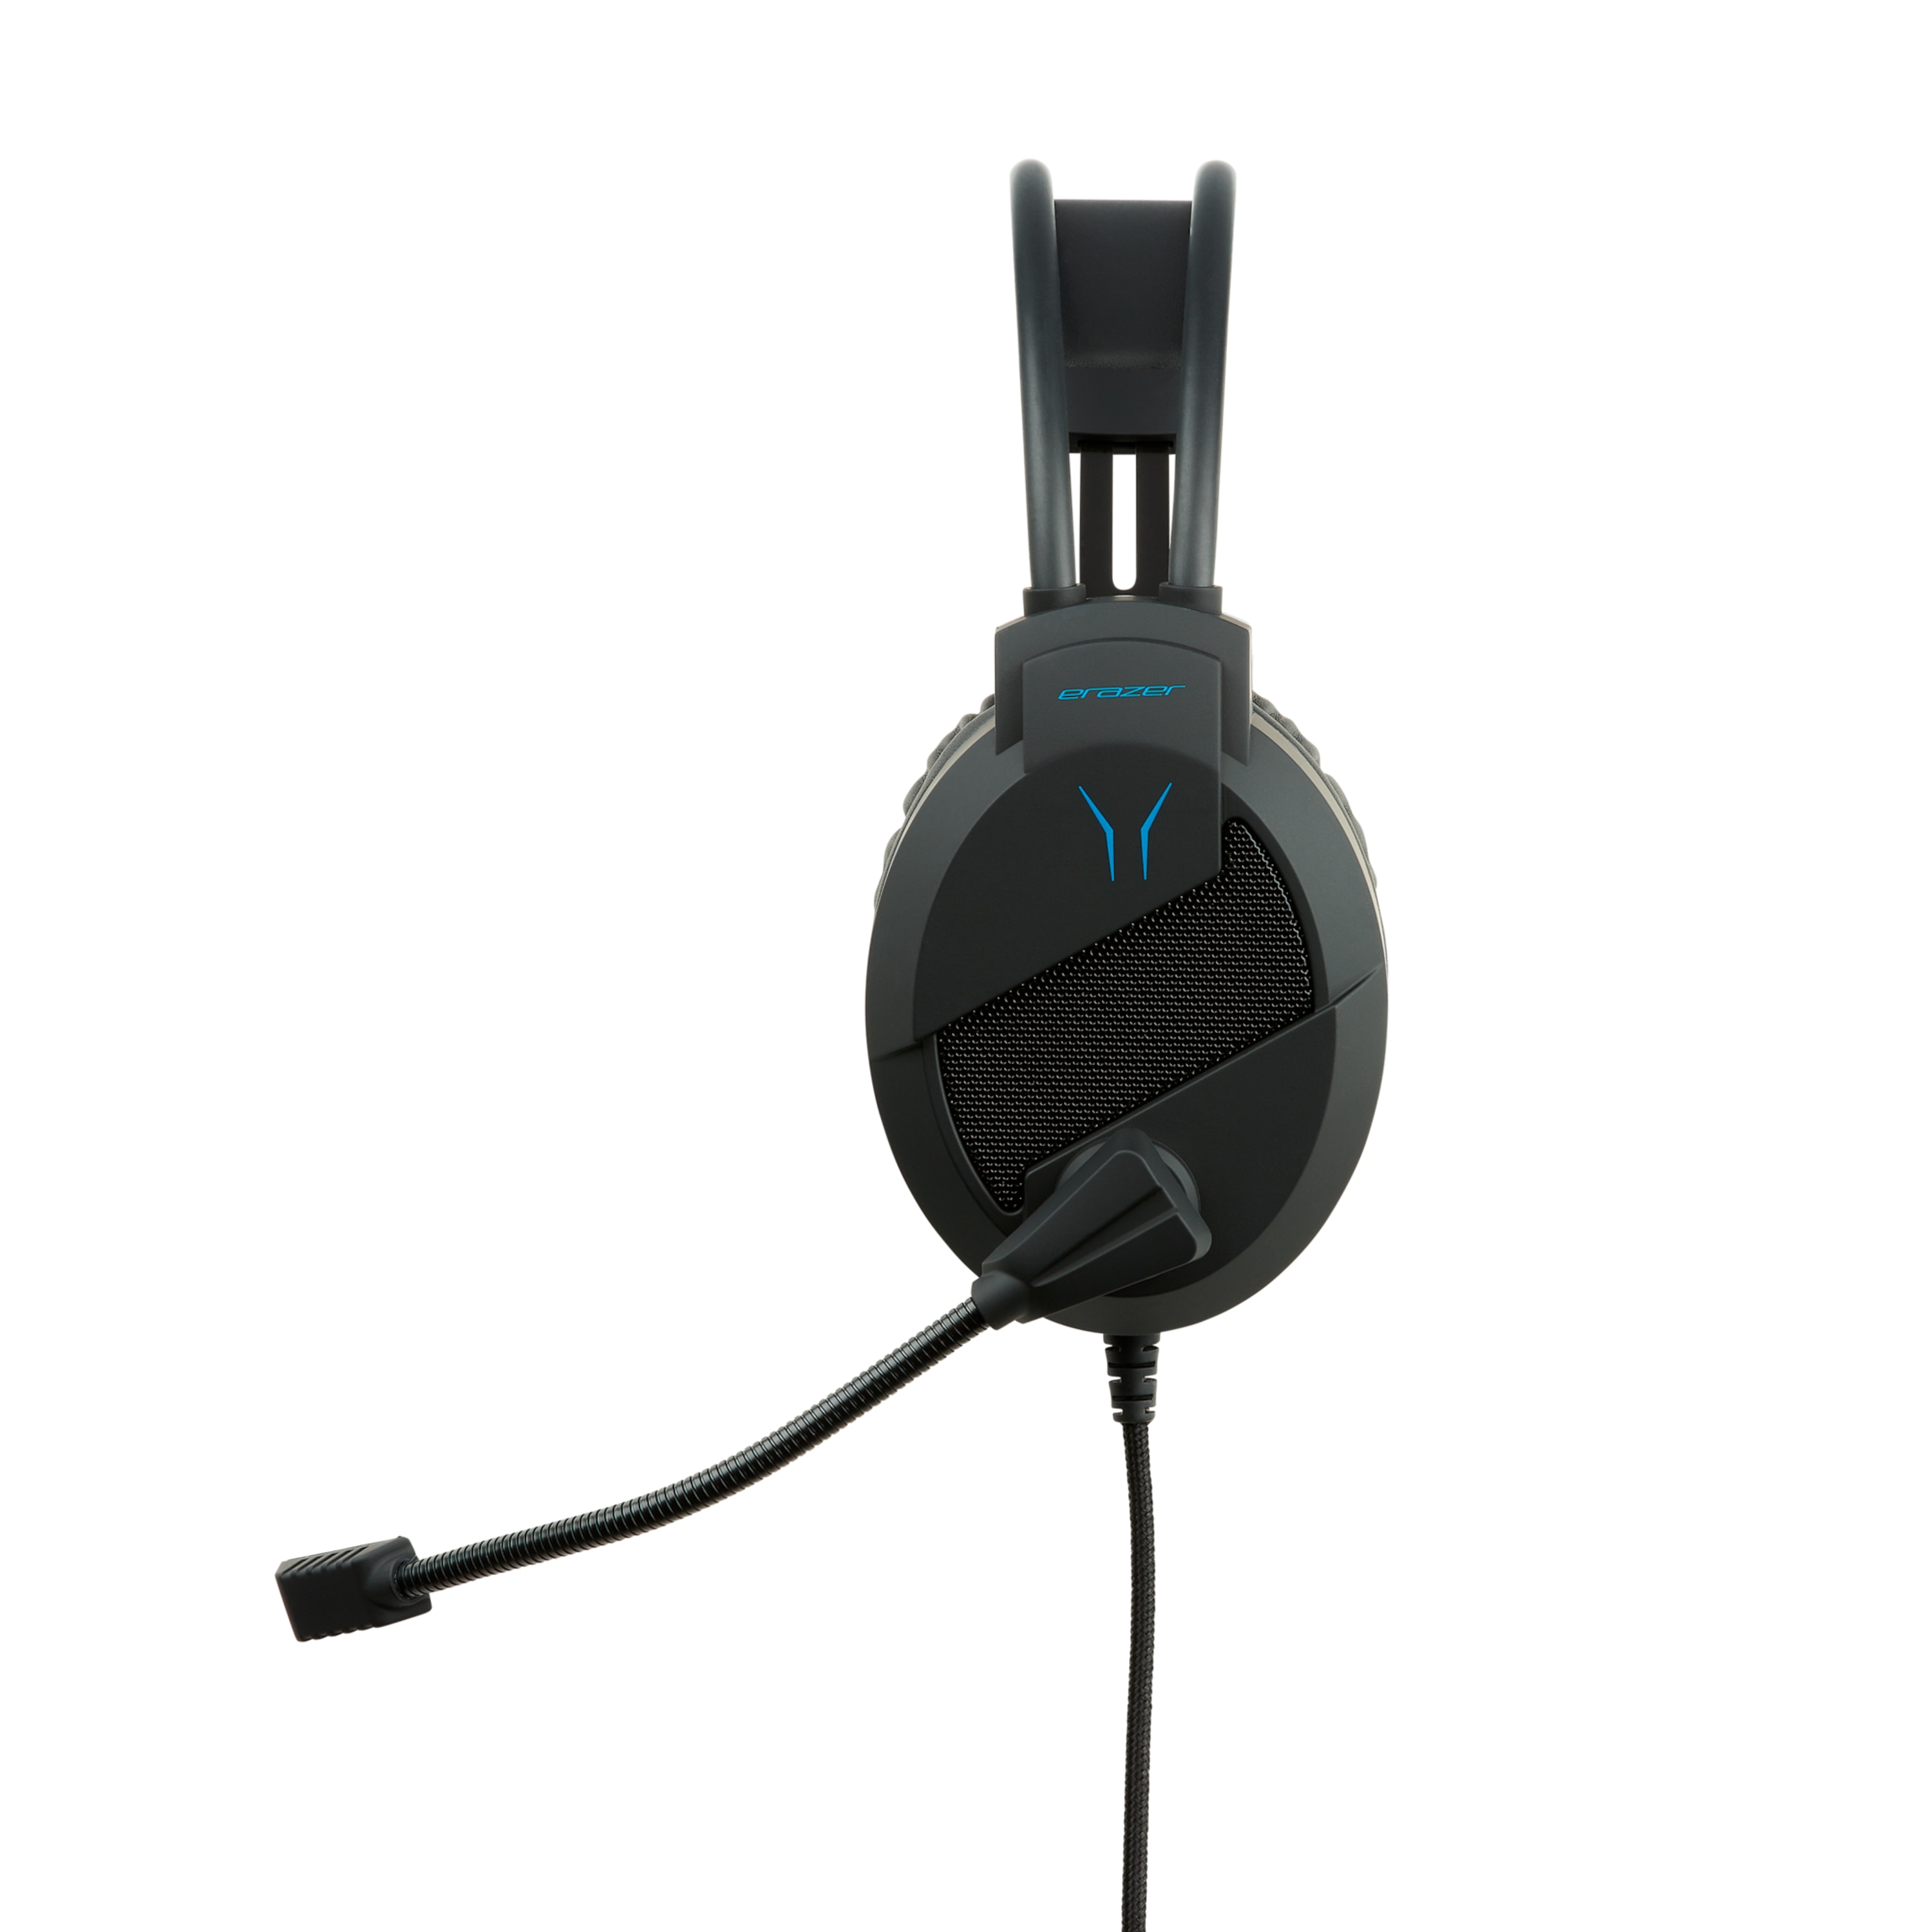 MEDION® ERAZER® X83009 2.0 Stereo Gaming Headset, überragende Klang- und Lautsprecherqualität, leistungsstarke Basswiedergabe, integrierters Mikrofon, Over Ear-Design